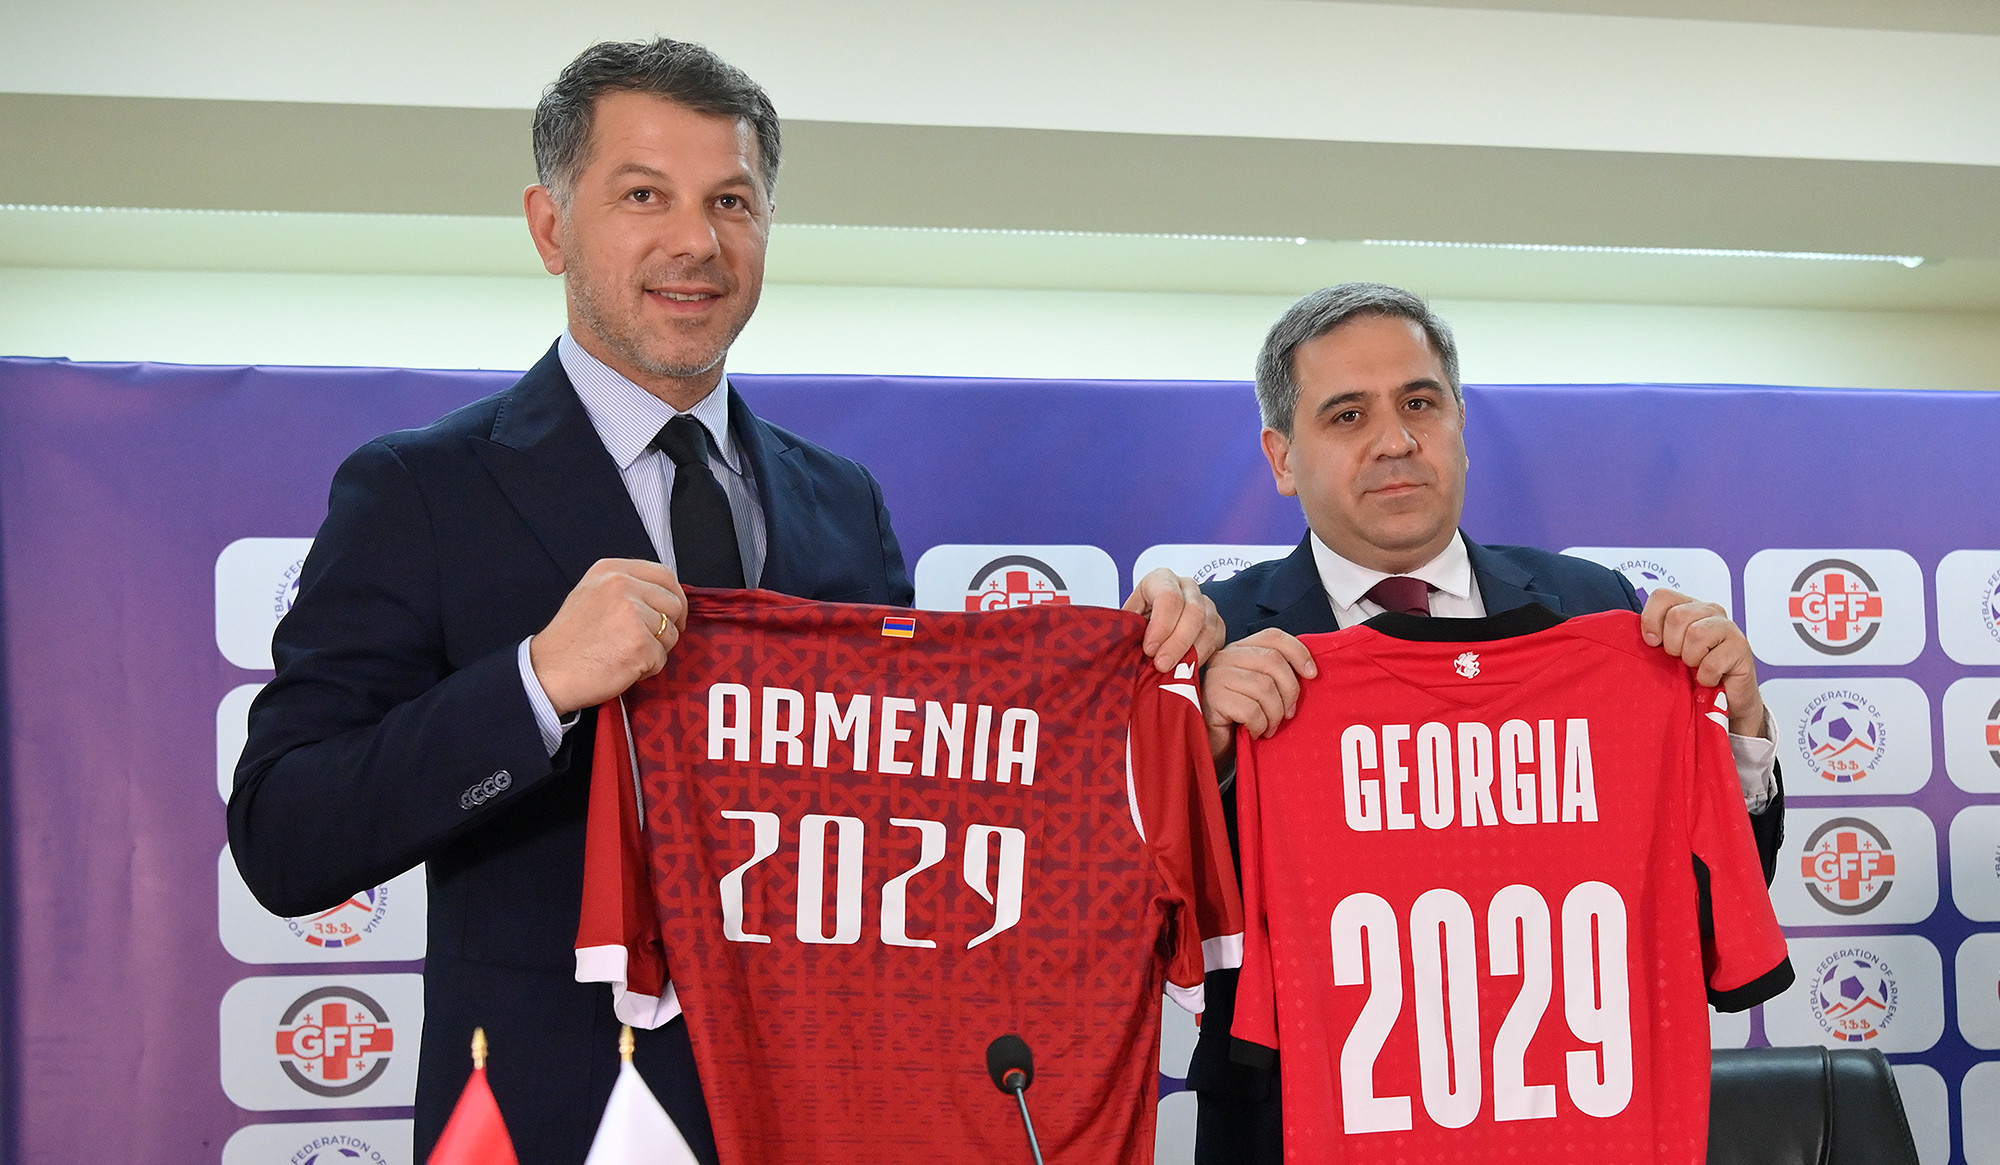 Հայաստանի և Վրաստանի ֆուտբոլի ֆեդերացիաները համատեղ հայտ են ներկայացրել ՖԻՖԱ-ին աշխարհի 2029-ի երիտասարդական առաջնությունը երկու երկրում անցկացնելու նպատակով